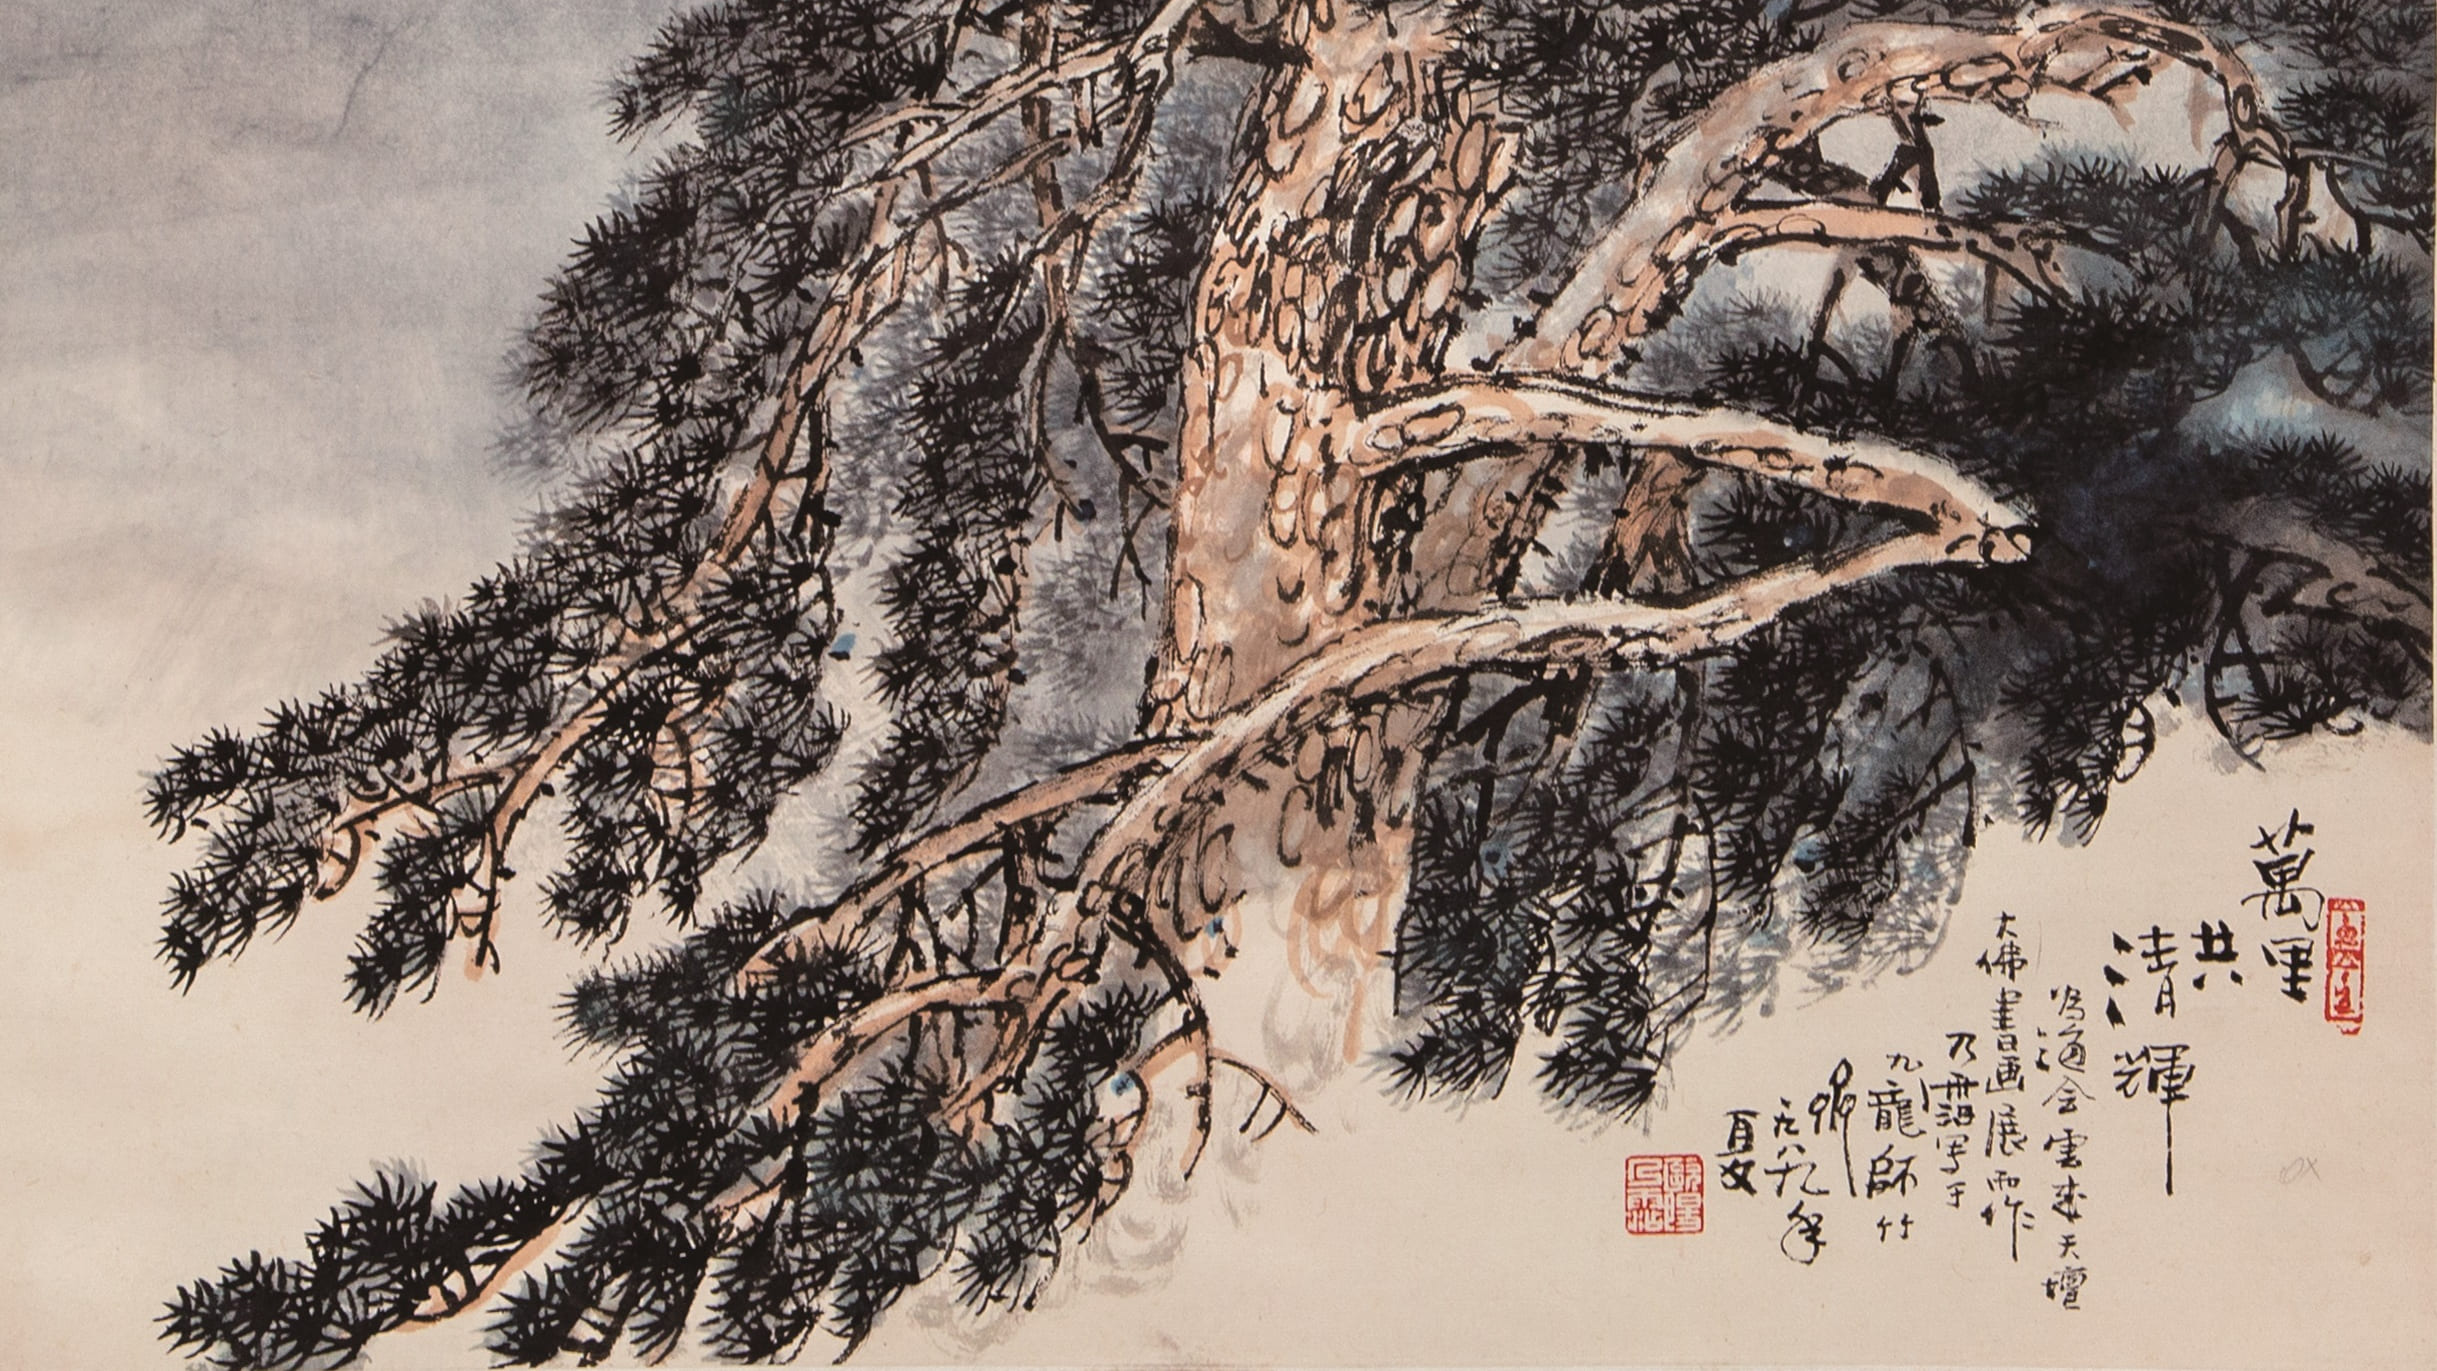 饒館「菩提花開」佛教書畫展12月9日舉行-免費欣賞上世紀書畫名家作品